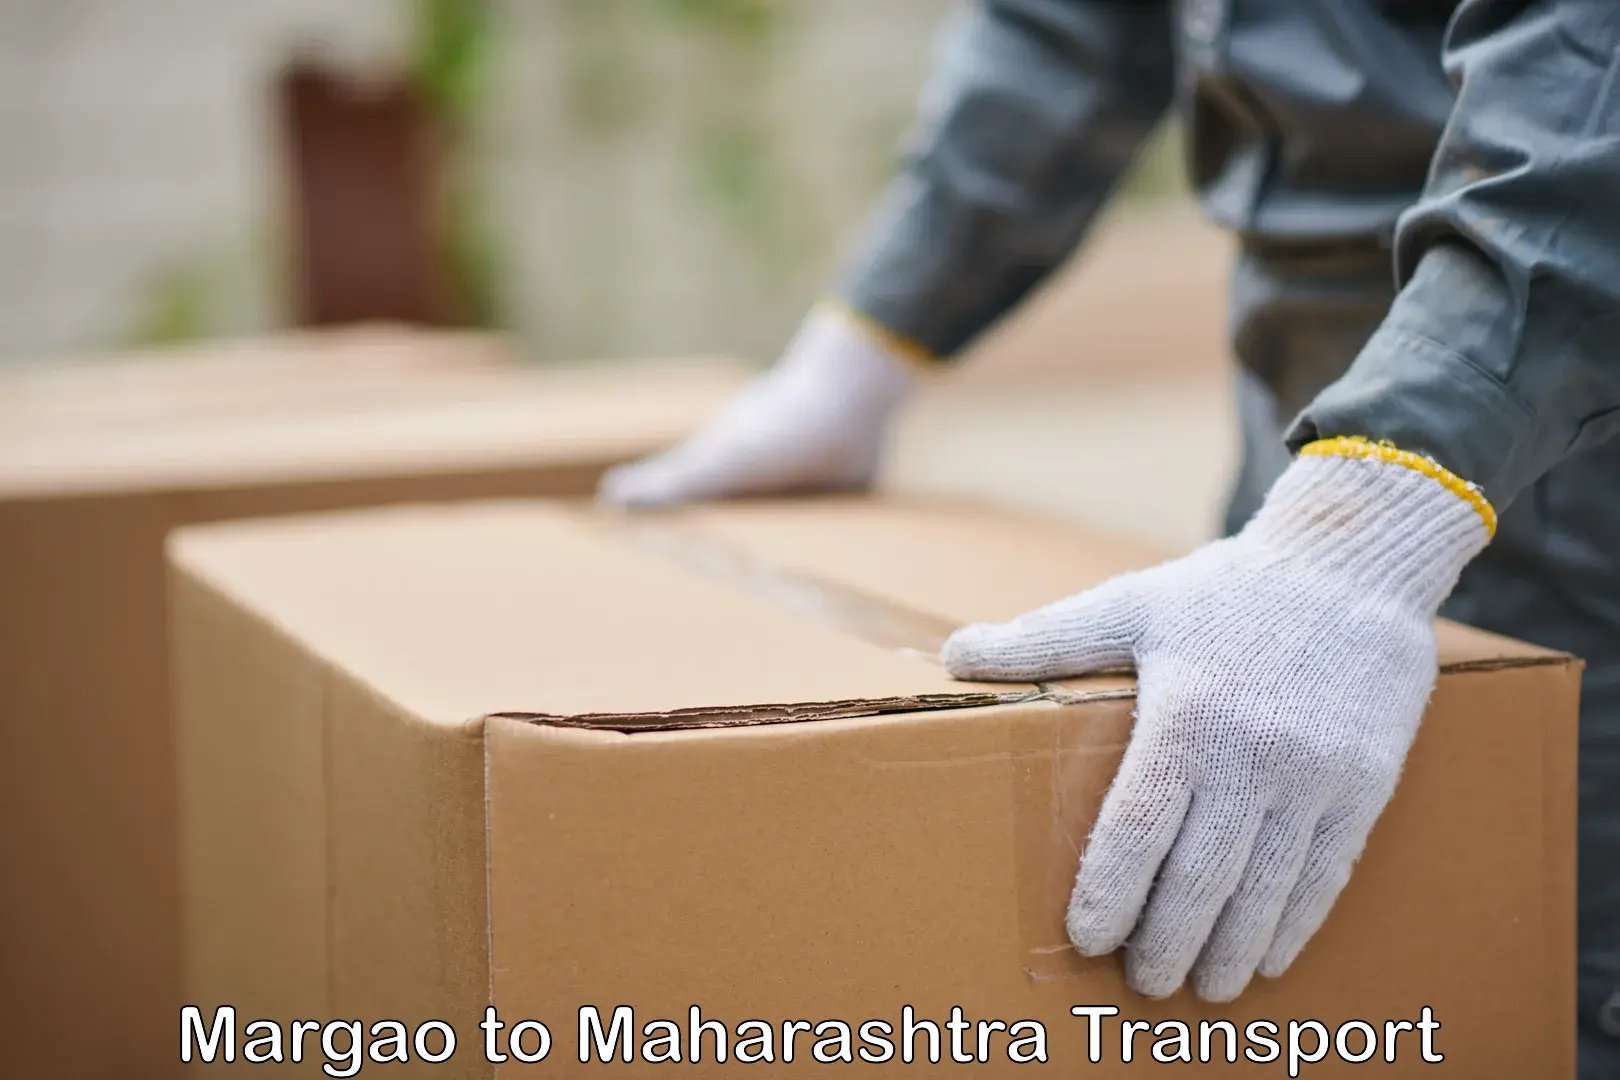 Furniture transport service Margao to Pandharkawada